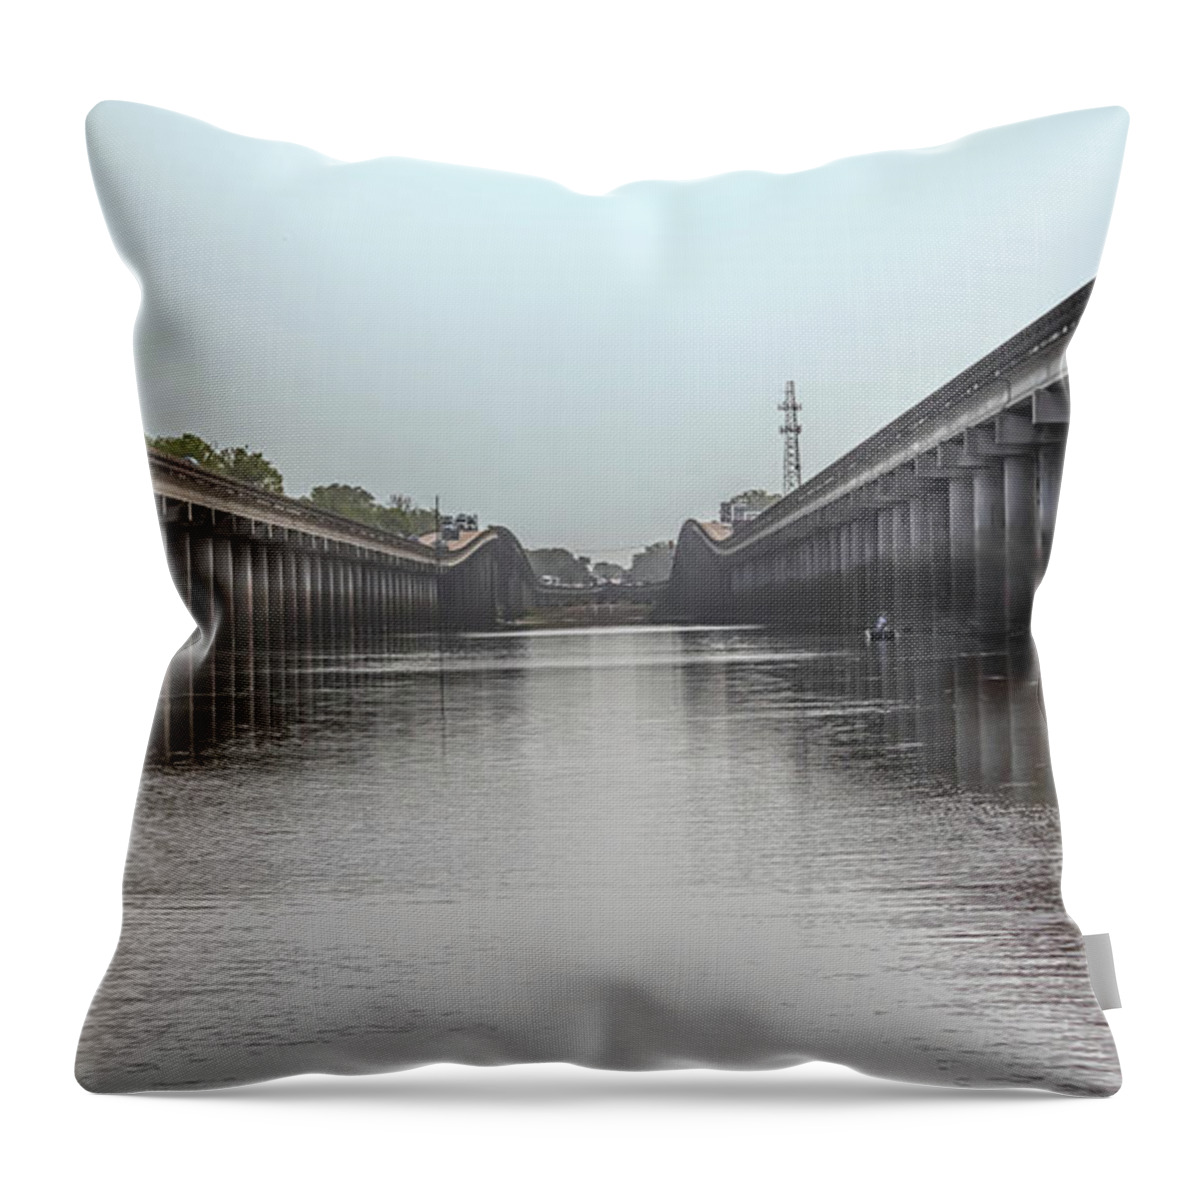 Louisiana Airborne Memorial Bridge Throw Pillow featuring the photograph Louisiana Airborne Memorial Bridge by Susan Rissi Tregoning